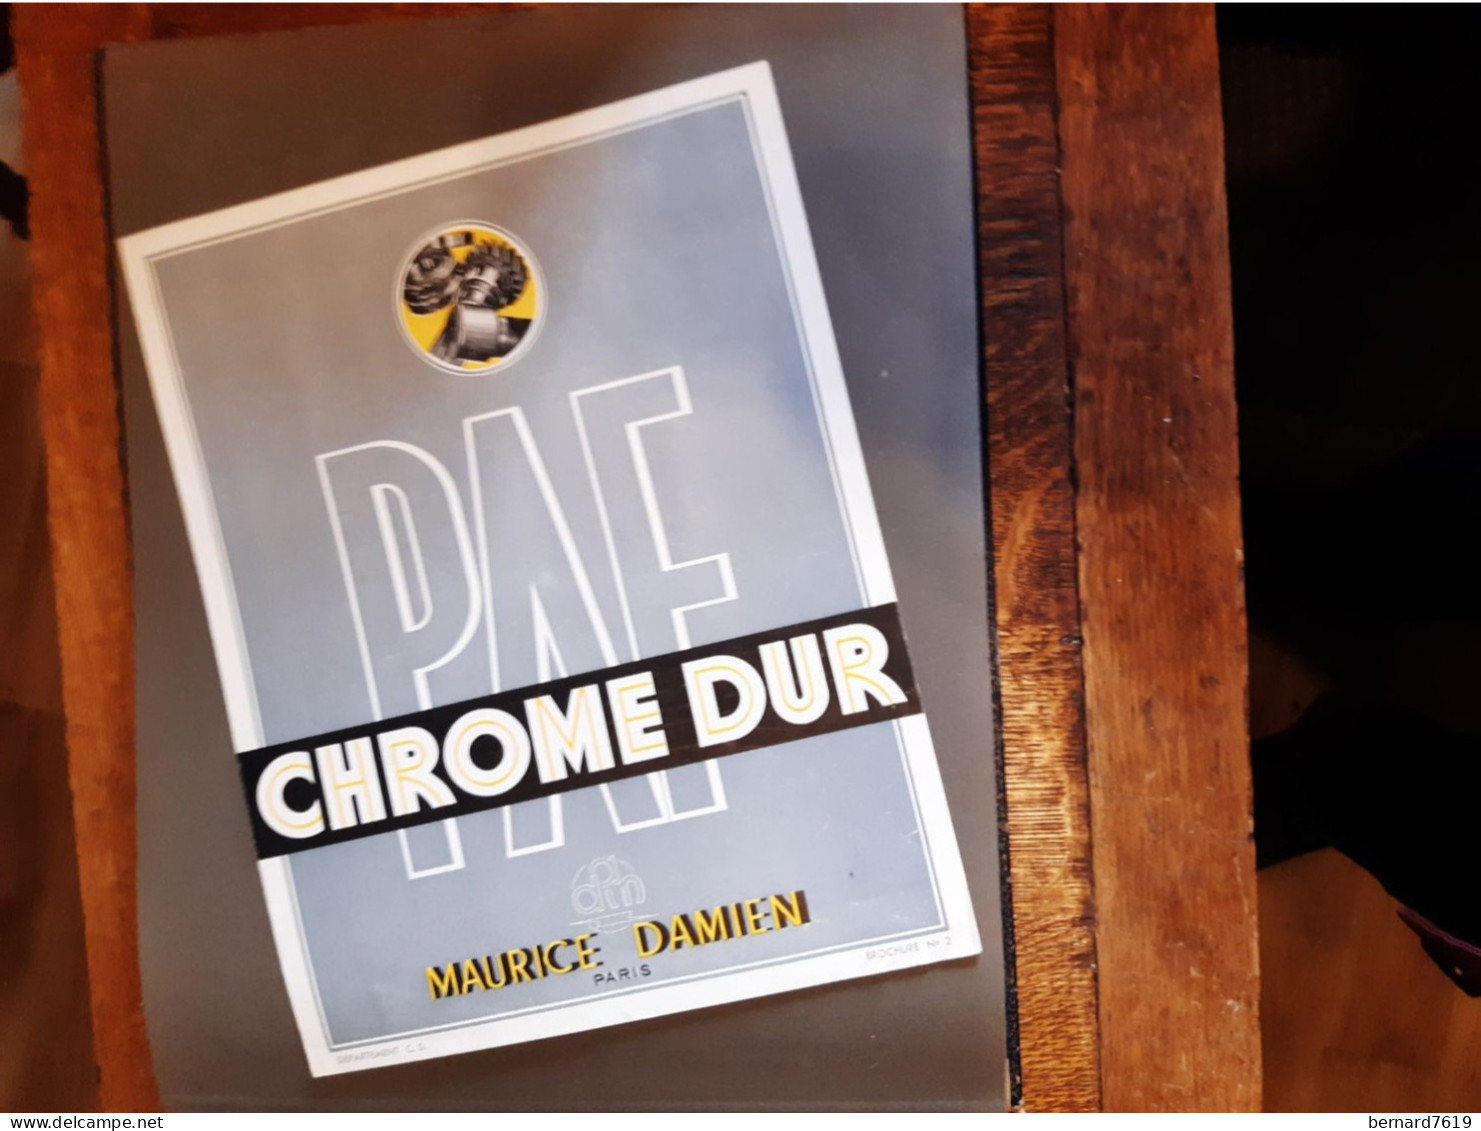 Publicite Annee Vers  1950 - Chrome Dur  Maurice Damien Paris - Byrrh - La Telephonie Francaise Paris 75011 - Publicidad